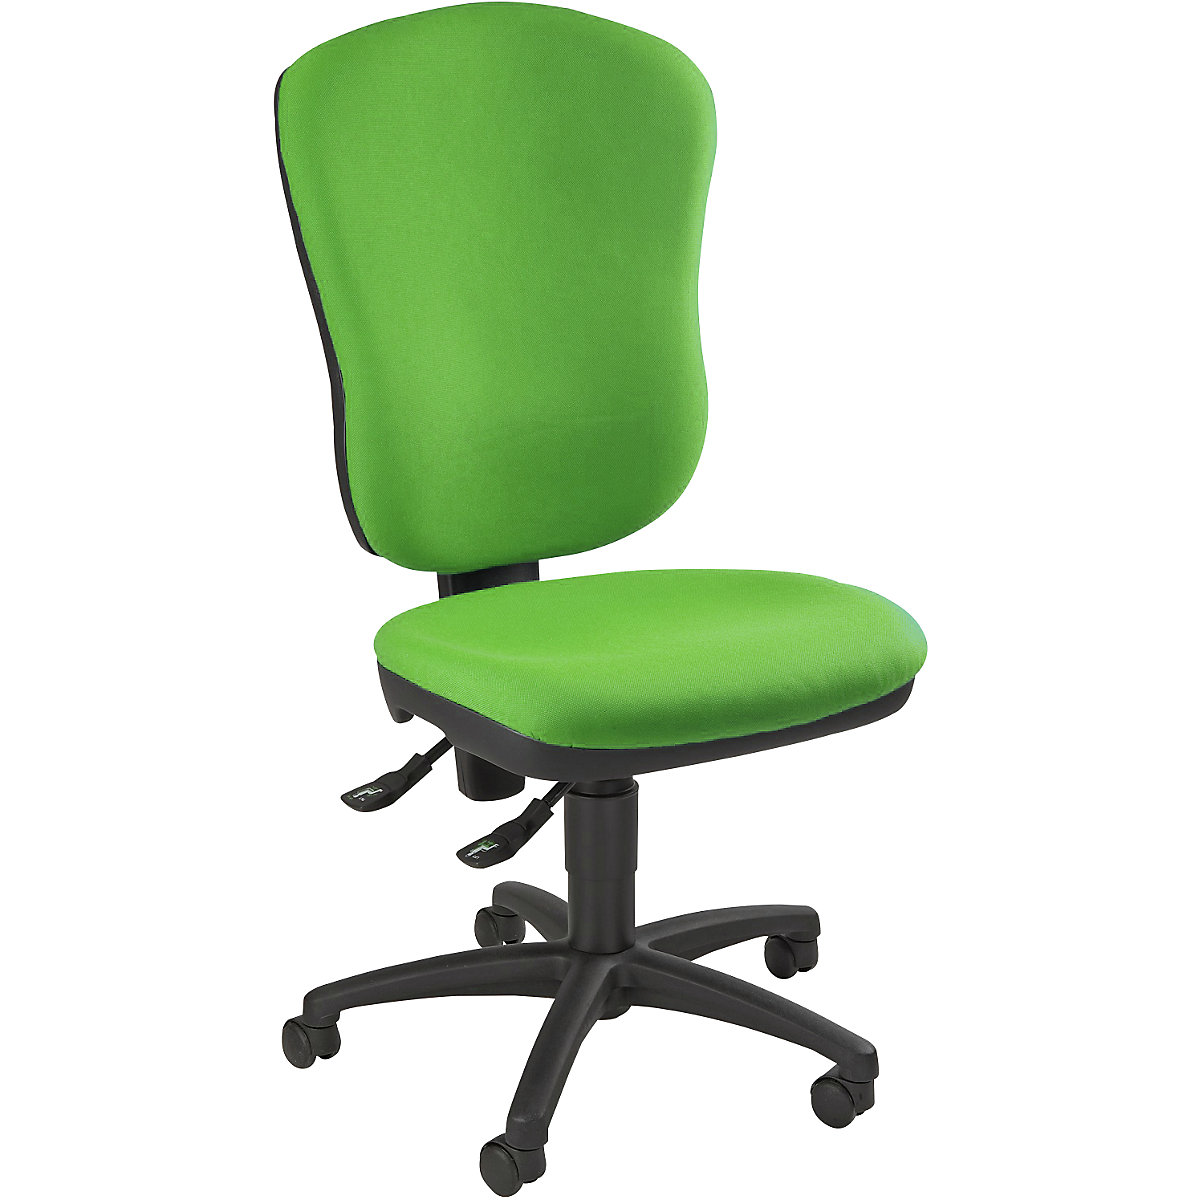 Cadeira giratória standard – Topstar, sem apoios para braços, com apoio para a região lombar, altura do encosto 570 mm, forro verde maçã-4